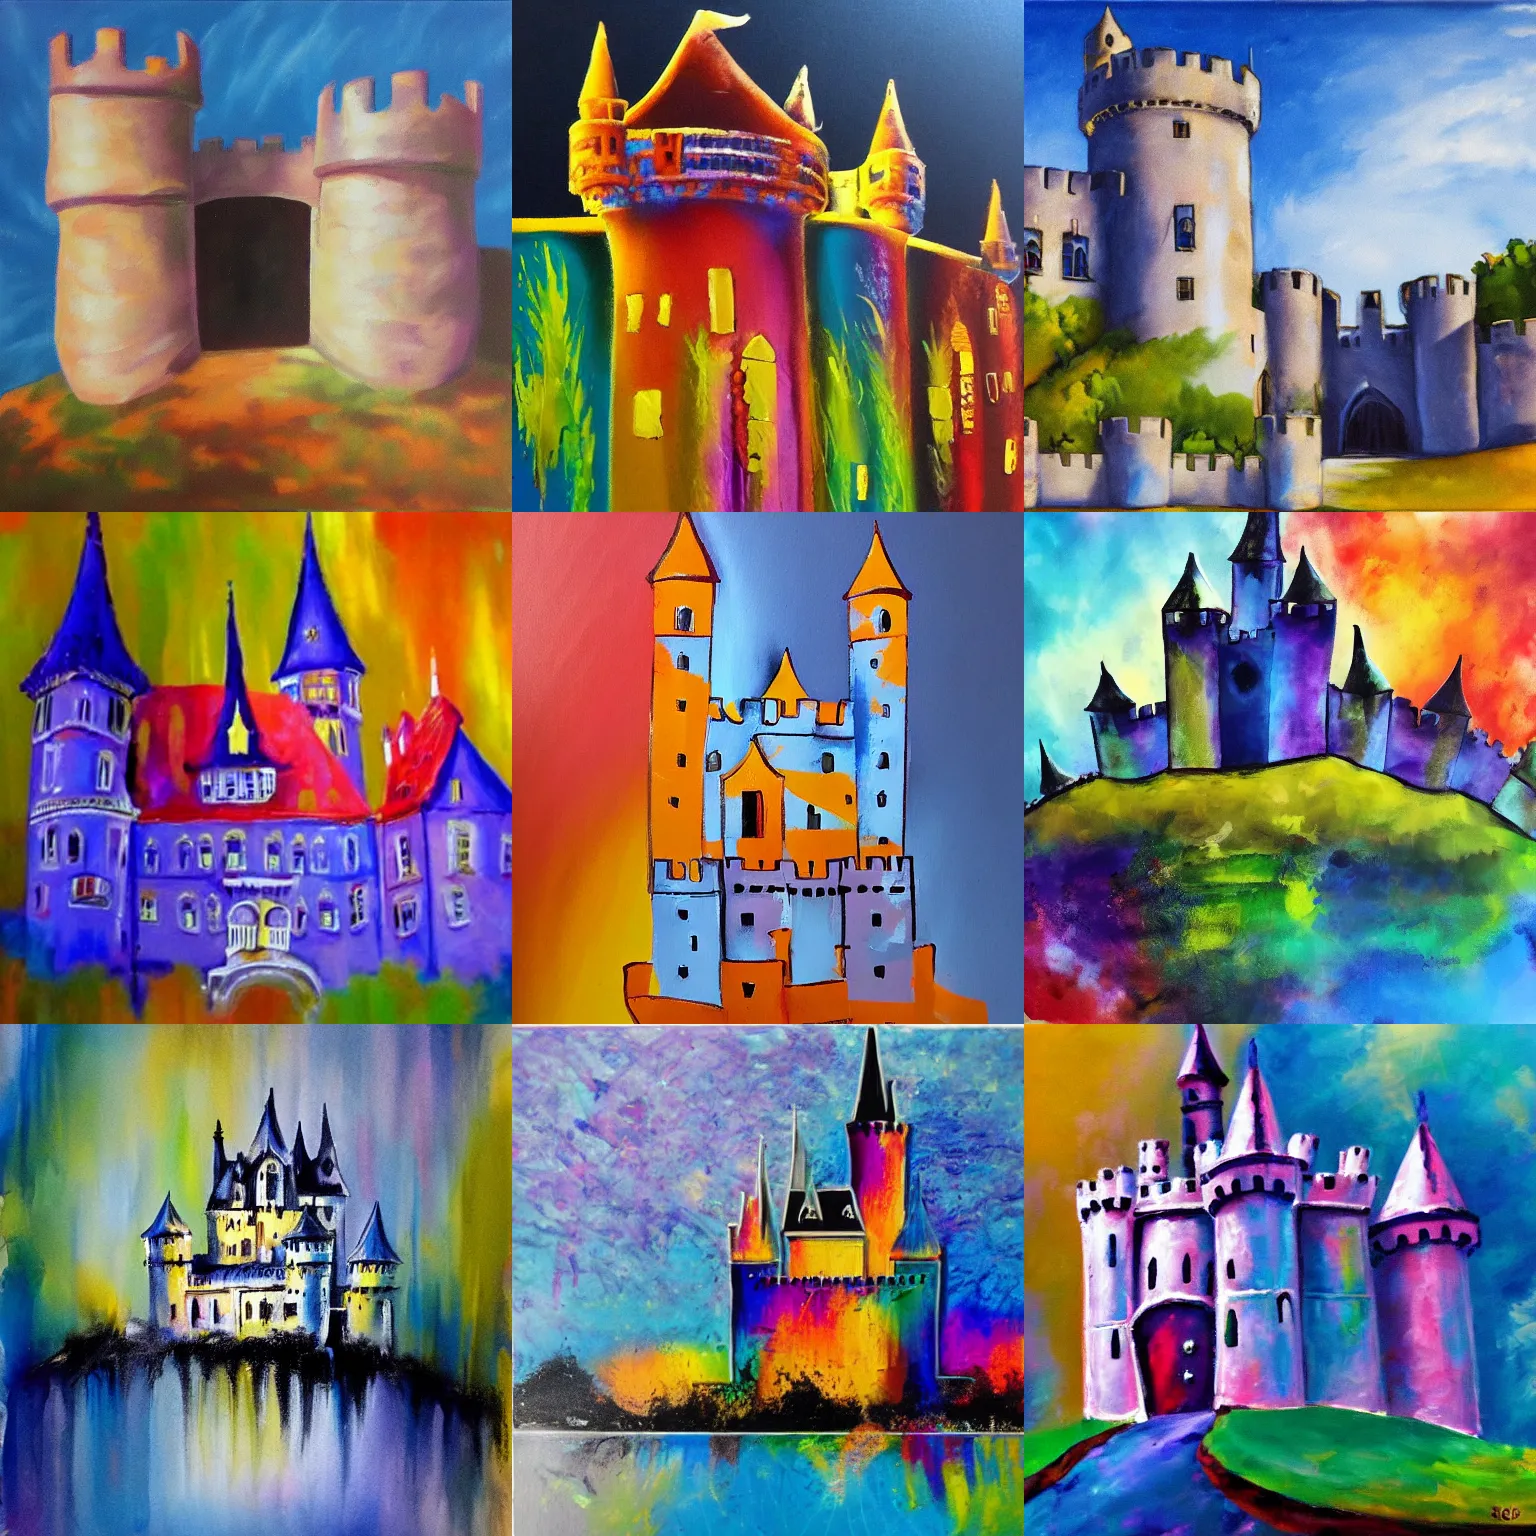 Prompt: paint pour style of a castle